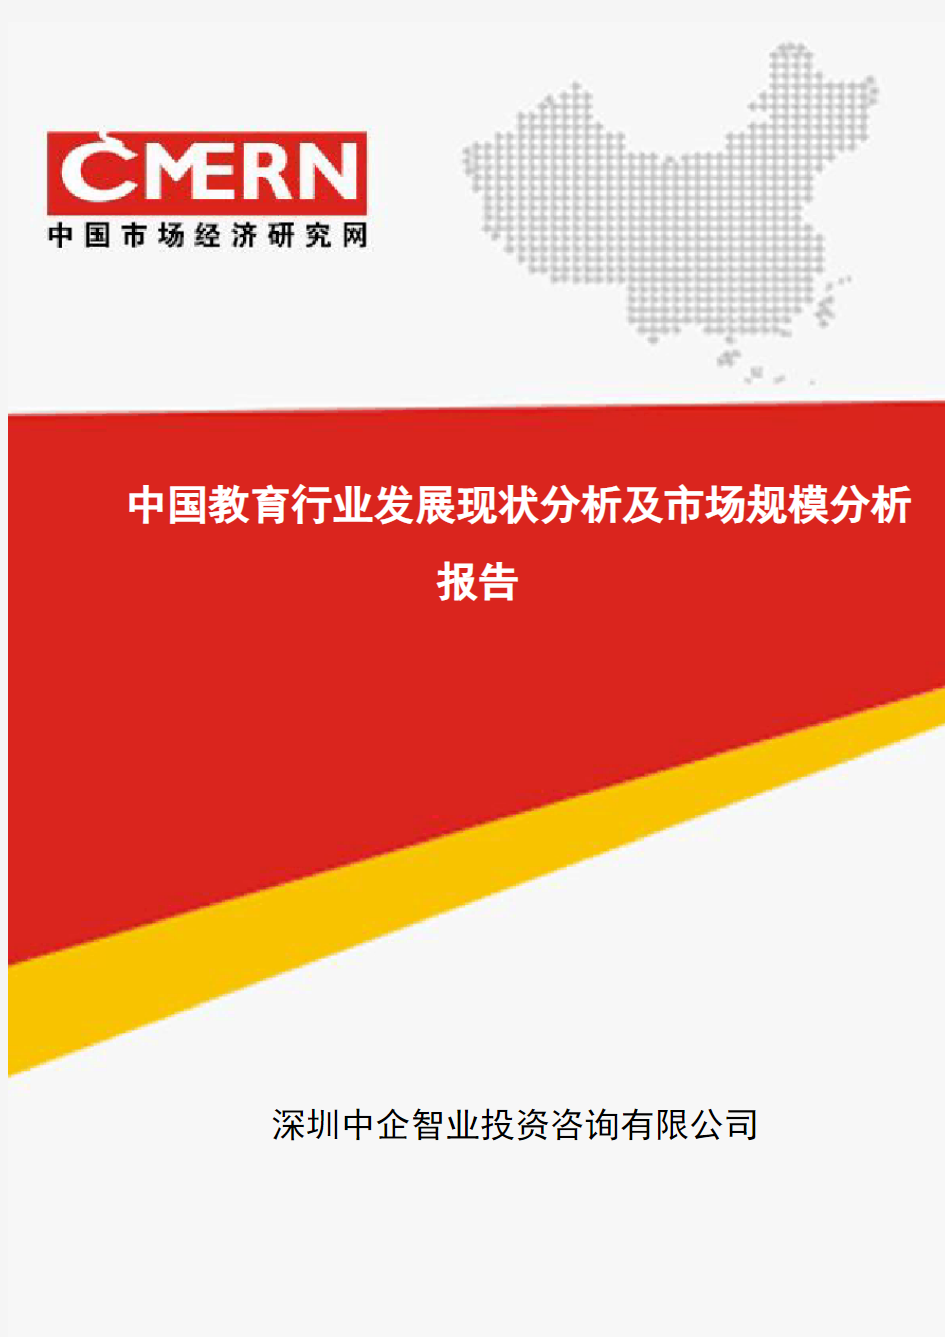 中国教育行业发展现状分析及市场规模分析报告